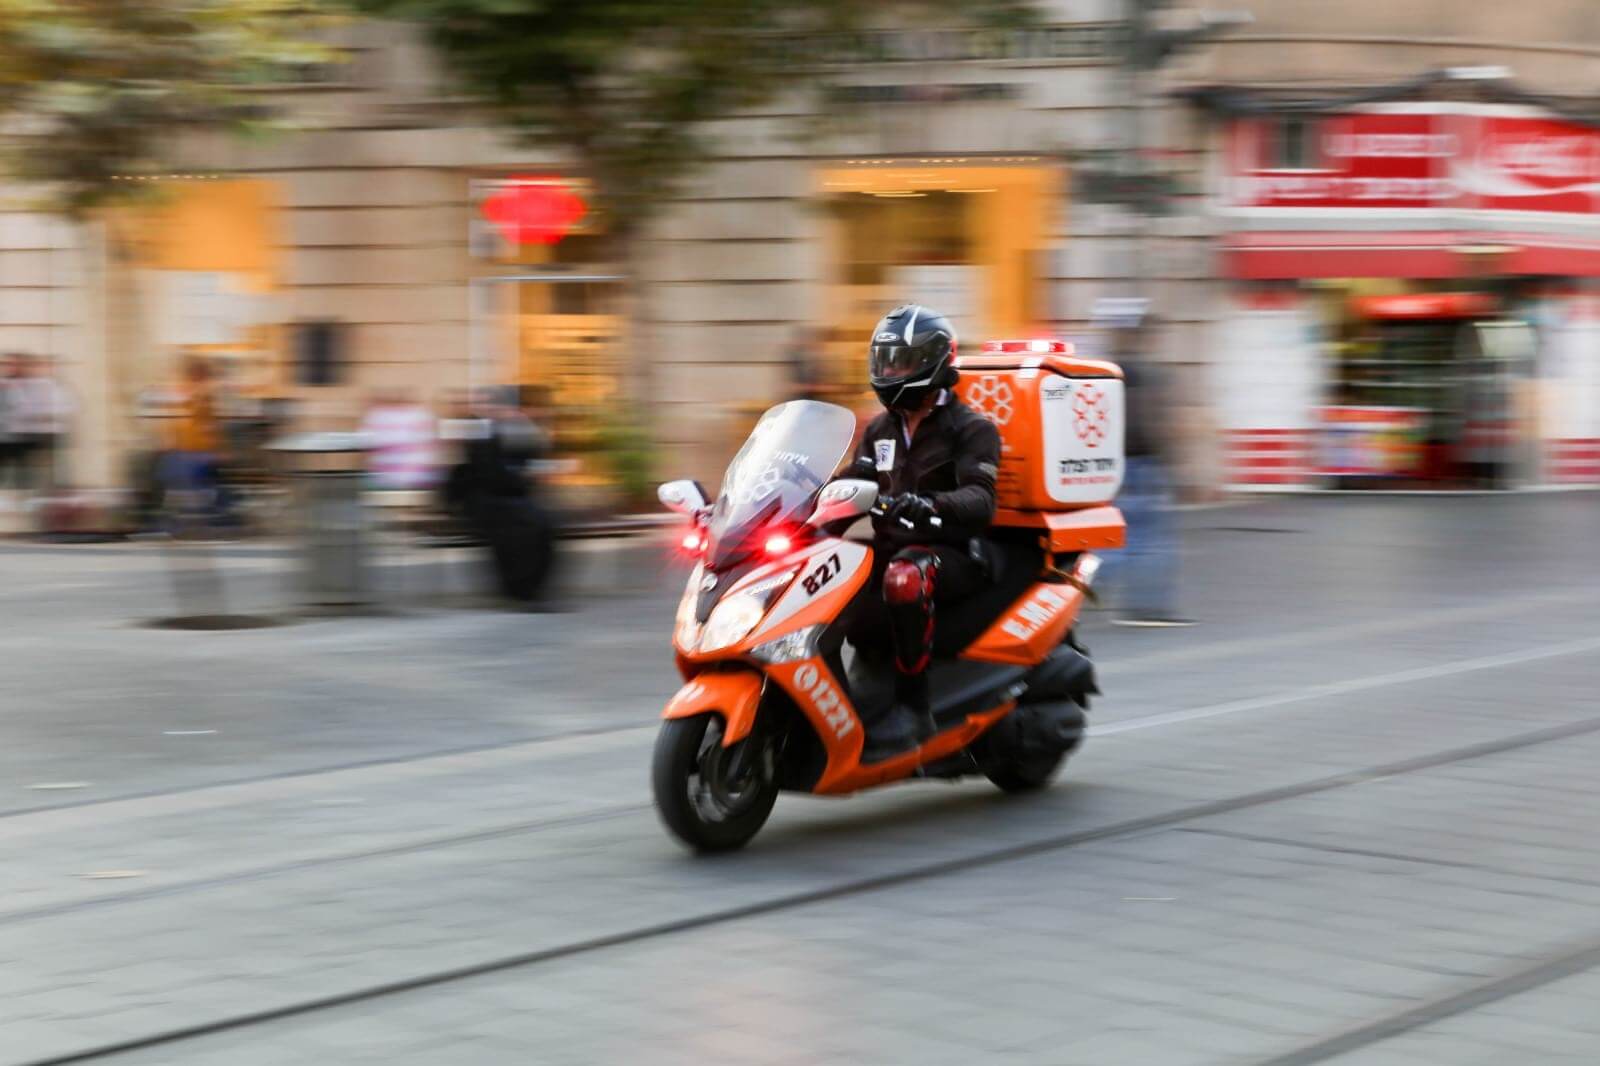 אופנולנס – אופנוע חירום מאובזר בציוד רפואי - איחוד הצלה AMBUCYCLE - צילום שירה הרשקופ